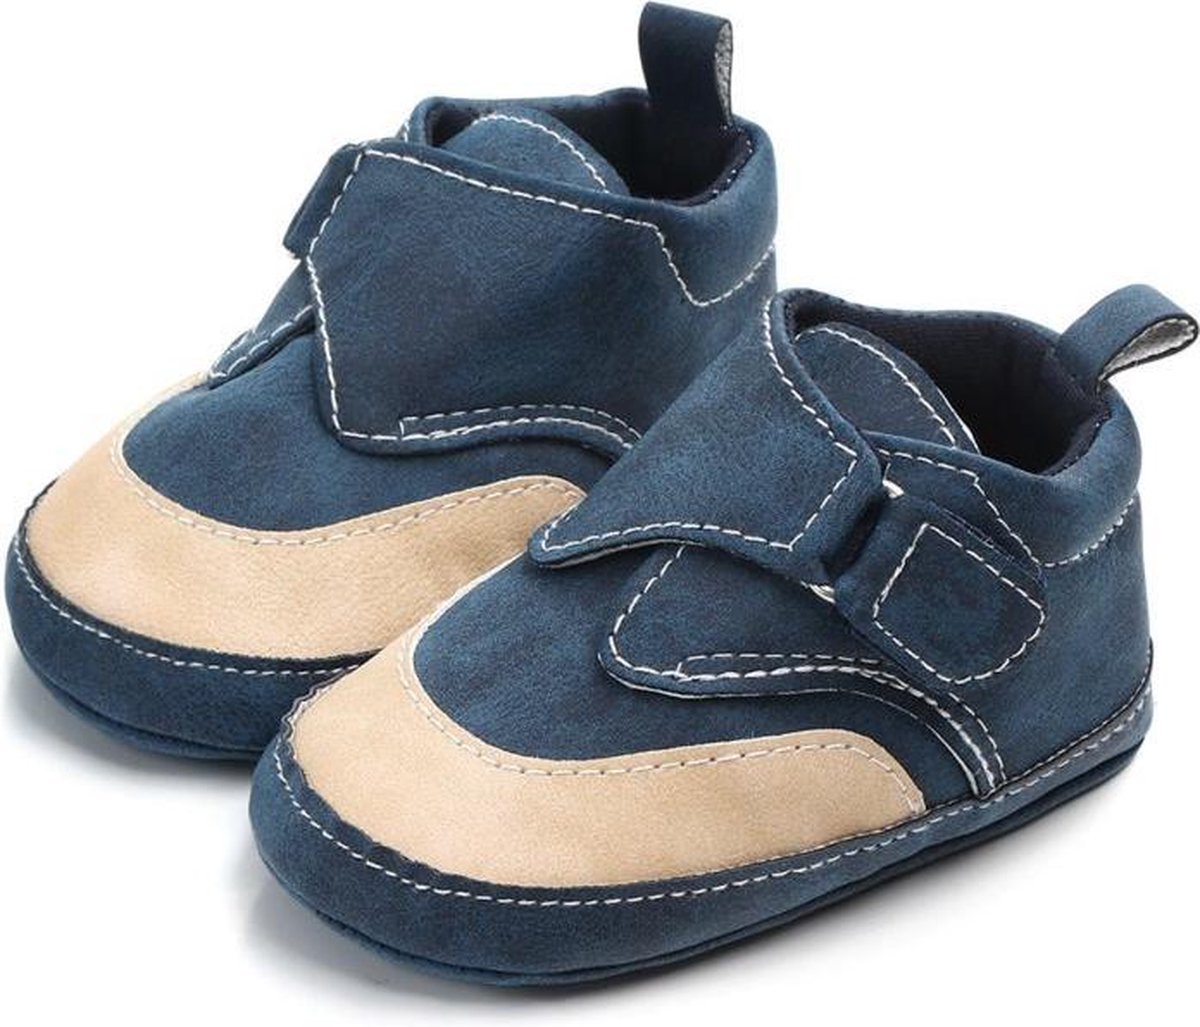 Donker blauwe kunst-leren schoenen - Kunstleer - Maat 19/20 - Zachte zool - 6 tot 12 maanden